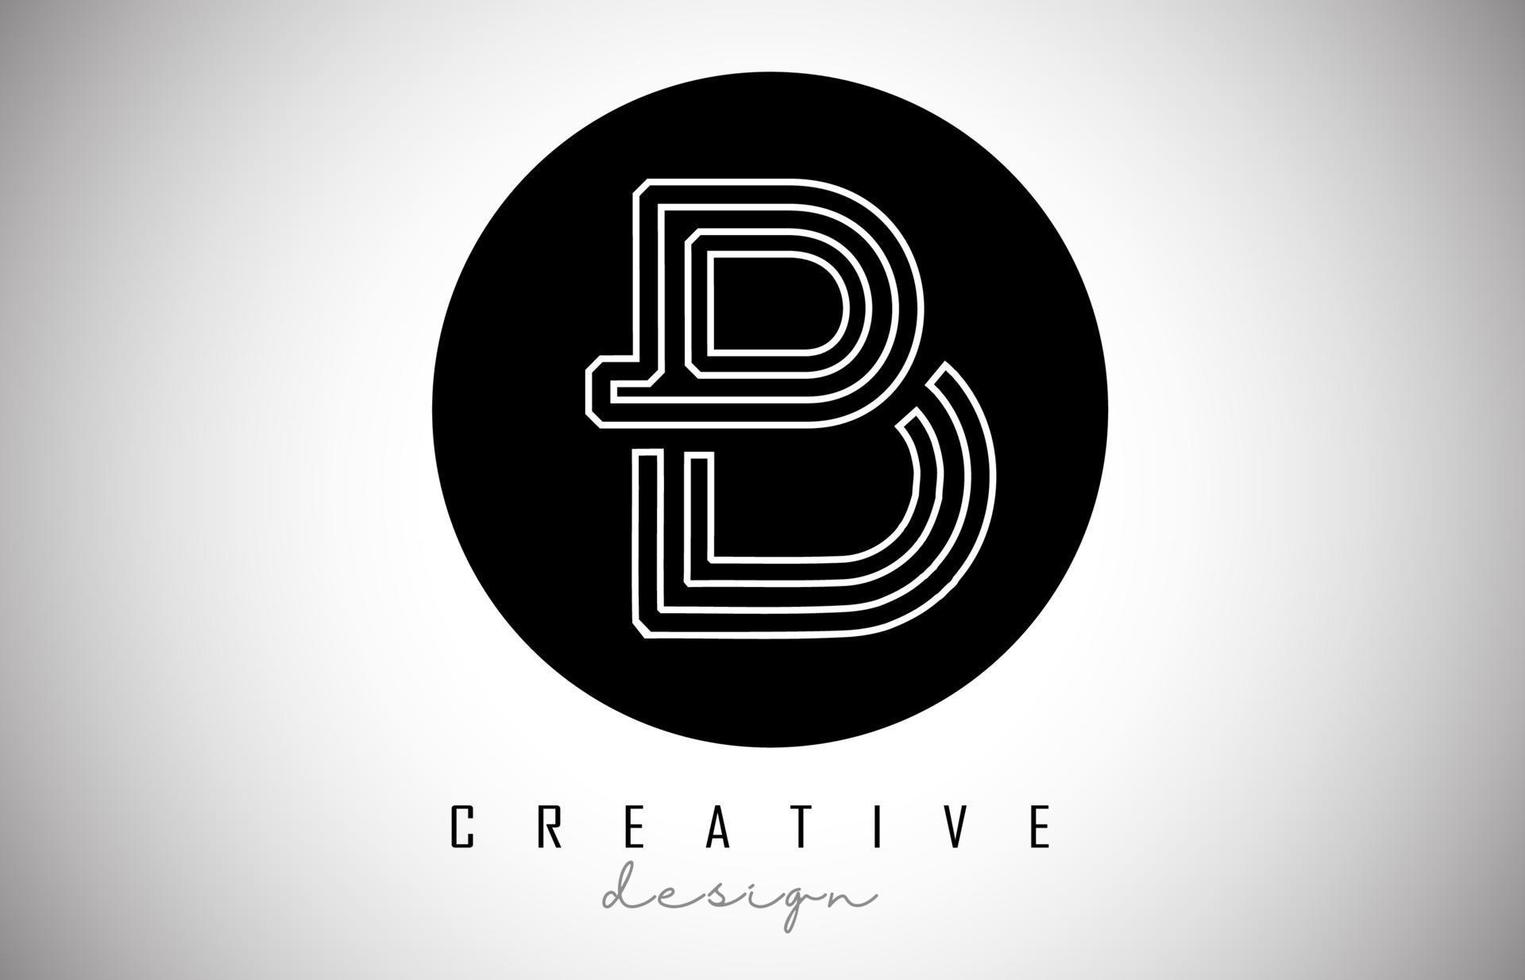 b lettera logo monogramma disegno vettoriale. icona della lettera b creativa sul cerchio nero vettore